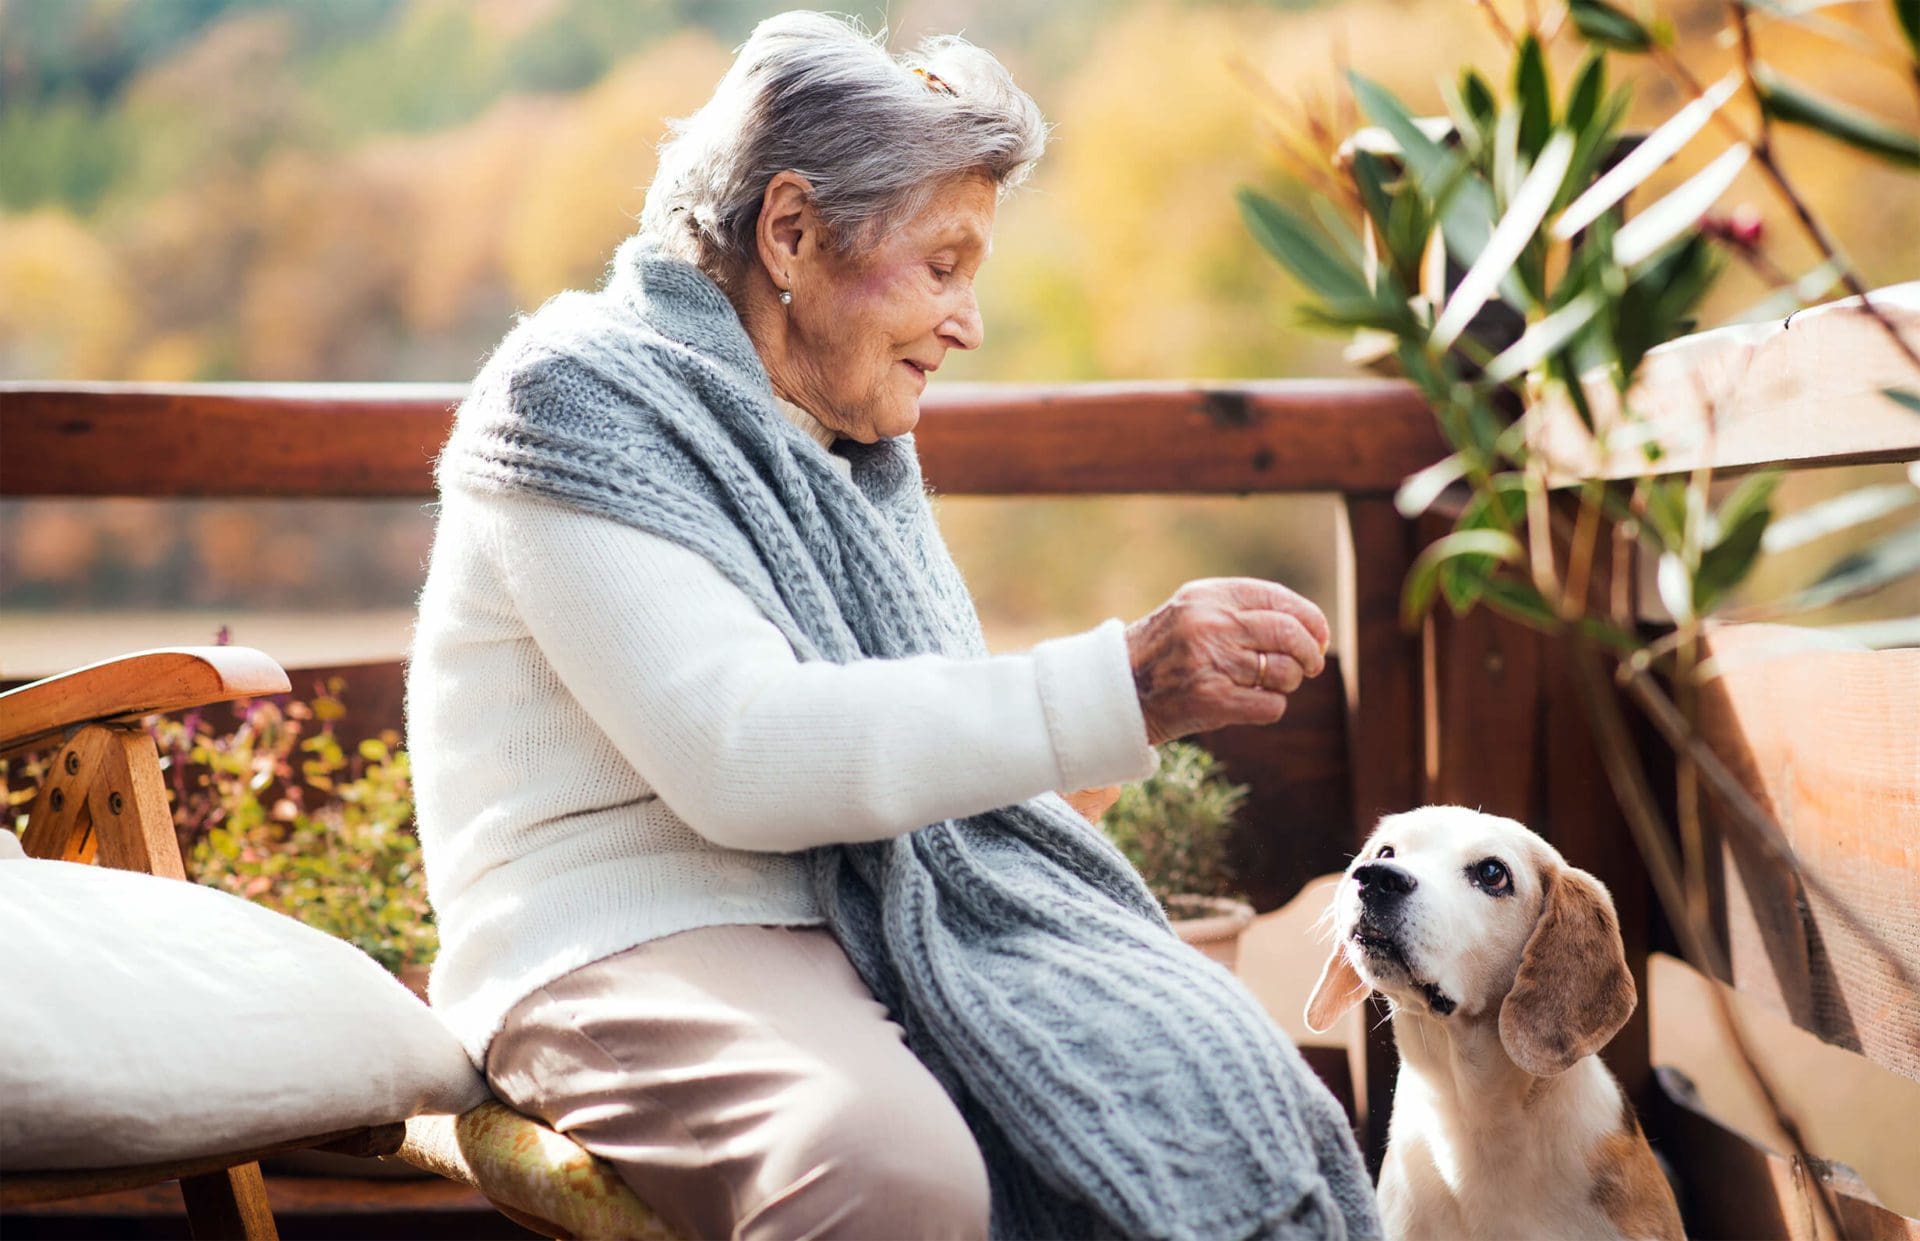 Elderly woman feeding a dog